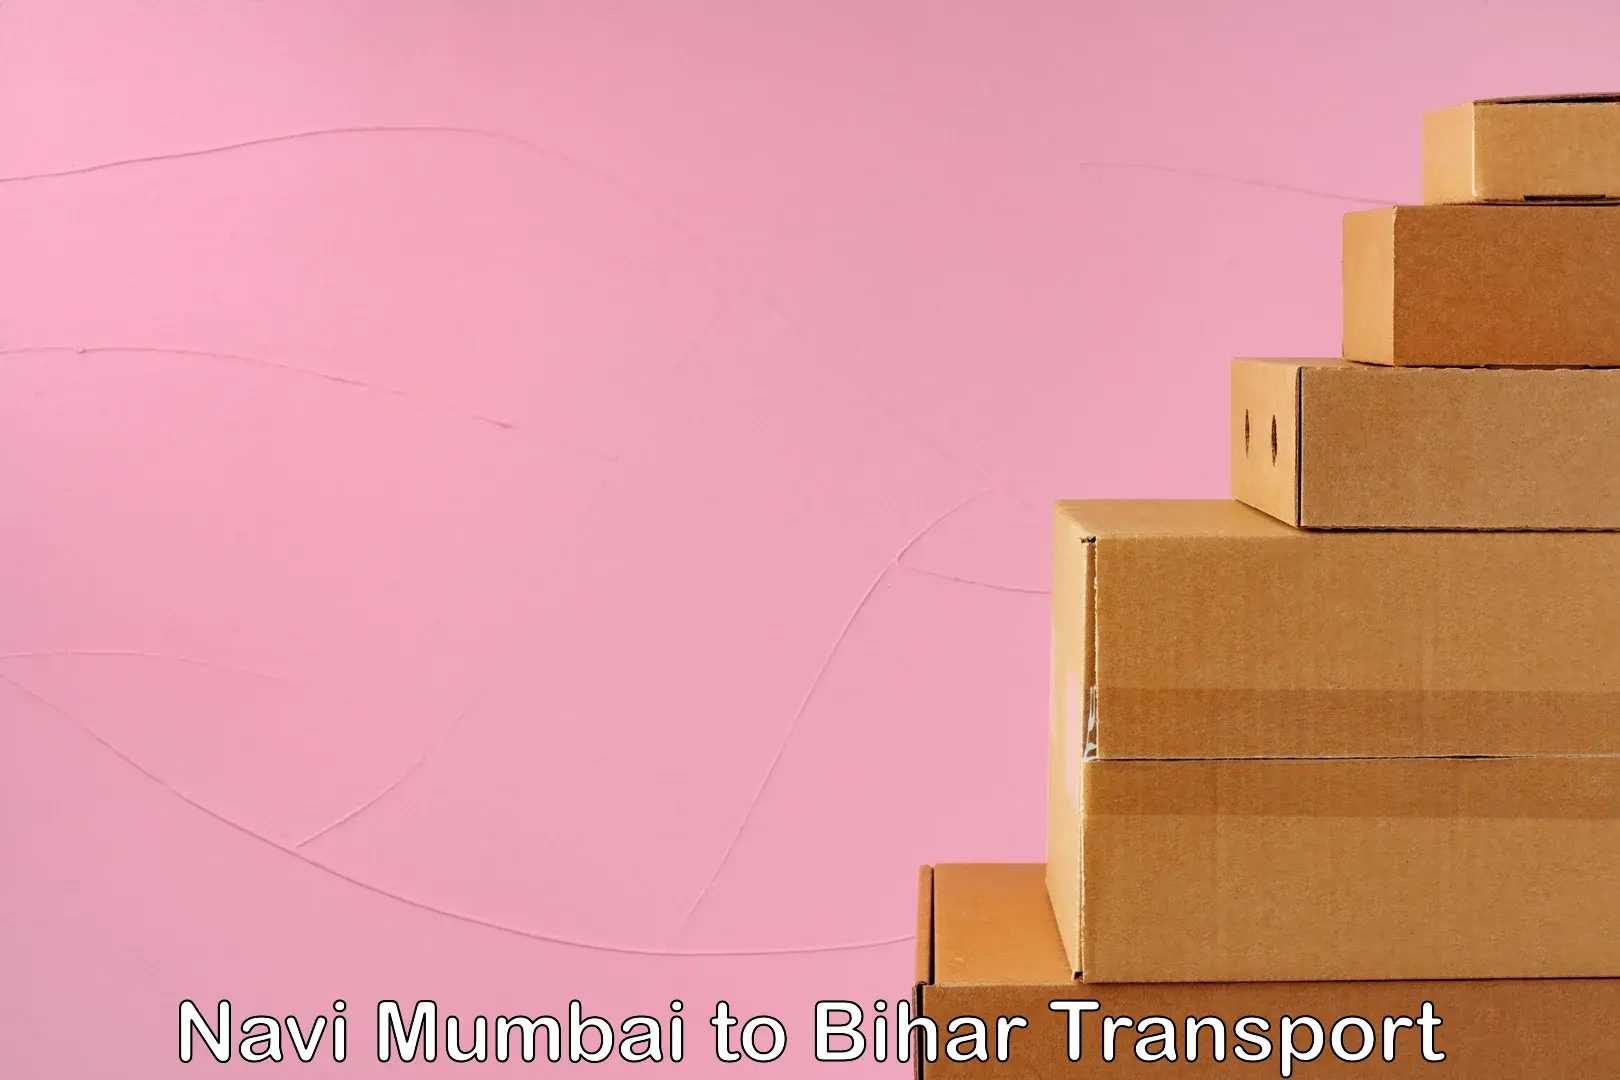 Nearest transport service Navi Mumbai to Darbhanga